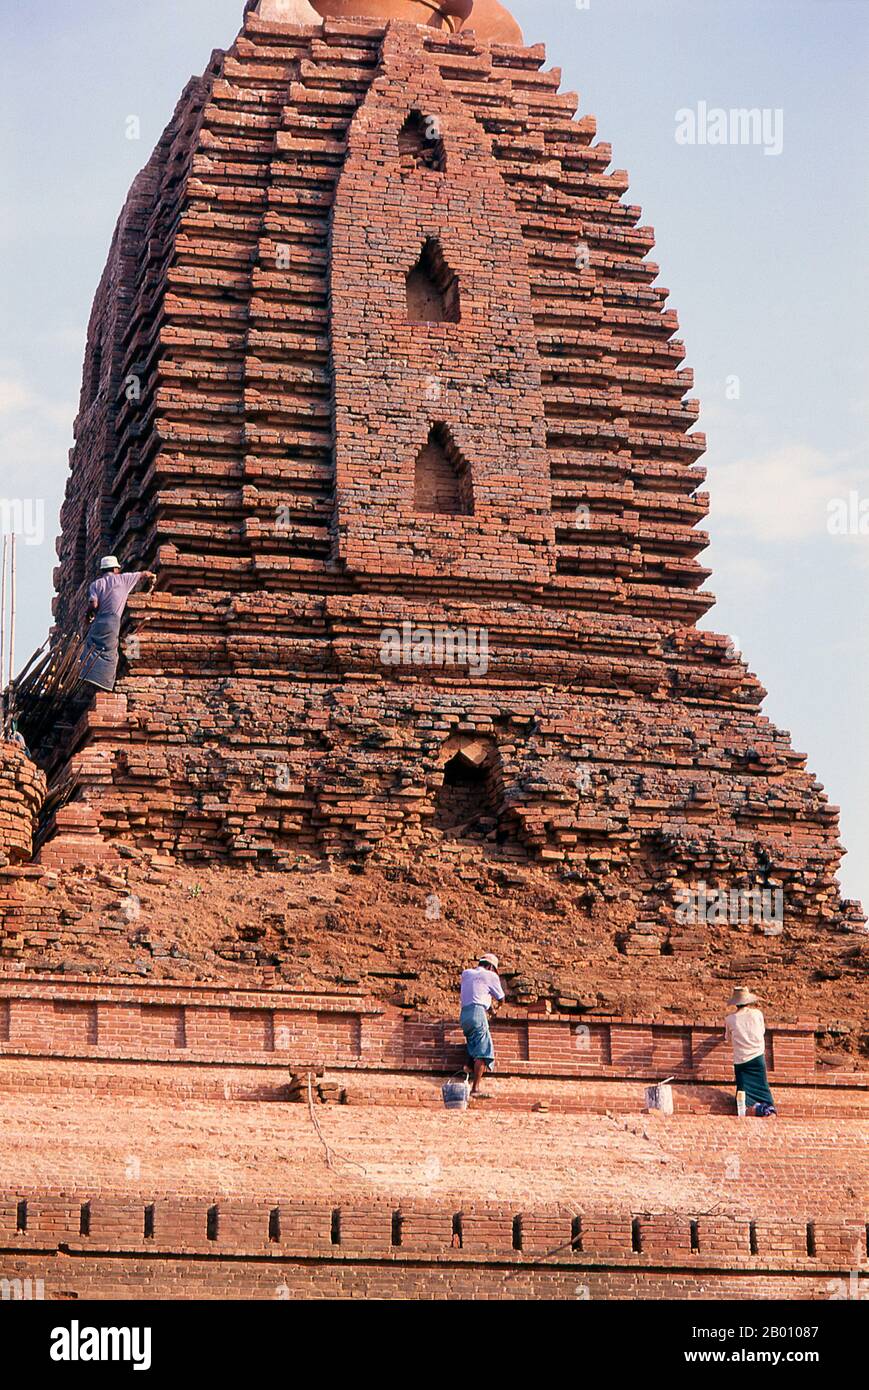 Birmania: Reparación de un templo en la antigua ciudad de Bagan (pagan). Bagan, antes pagano, fue construido principalmente entre el siglo 11th y el siglo 13th. Formalmente titulado Arimaddanapura o Arimaddana (la ciudad del cruzado enemigo) y también conocido como Tambadipa (la tierra del cobre) o Tassadessa (la tierra parchada), era la capital de varios reinos antiguos en Birmania. Foto de stock